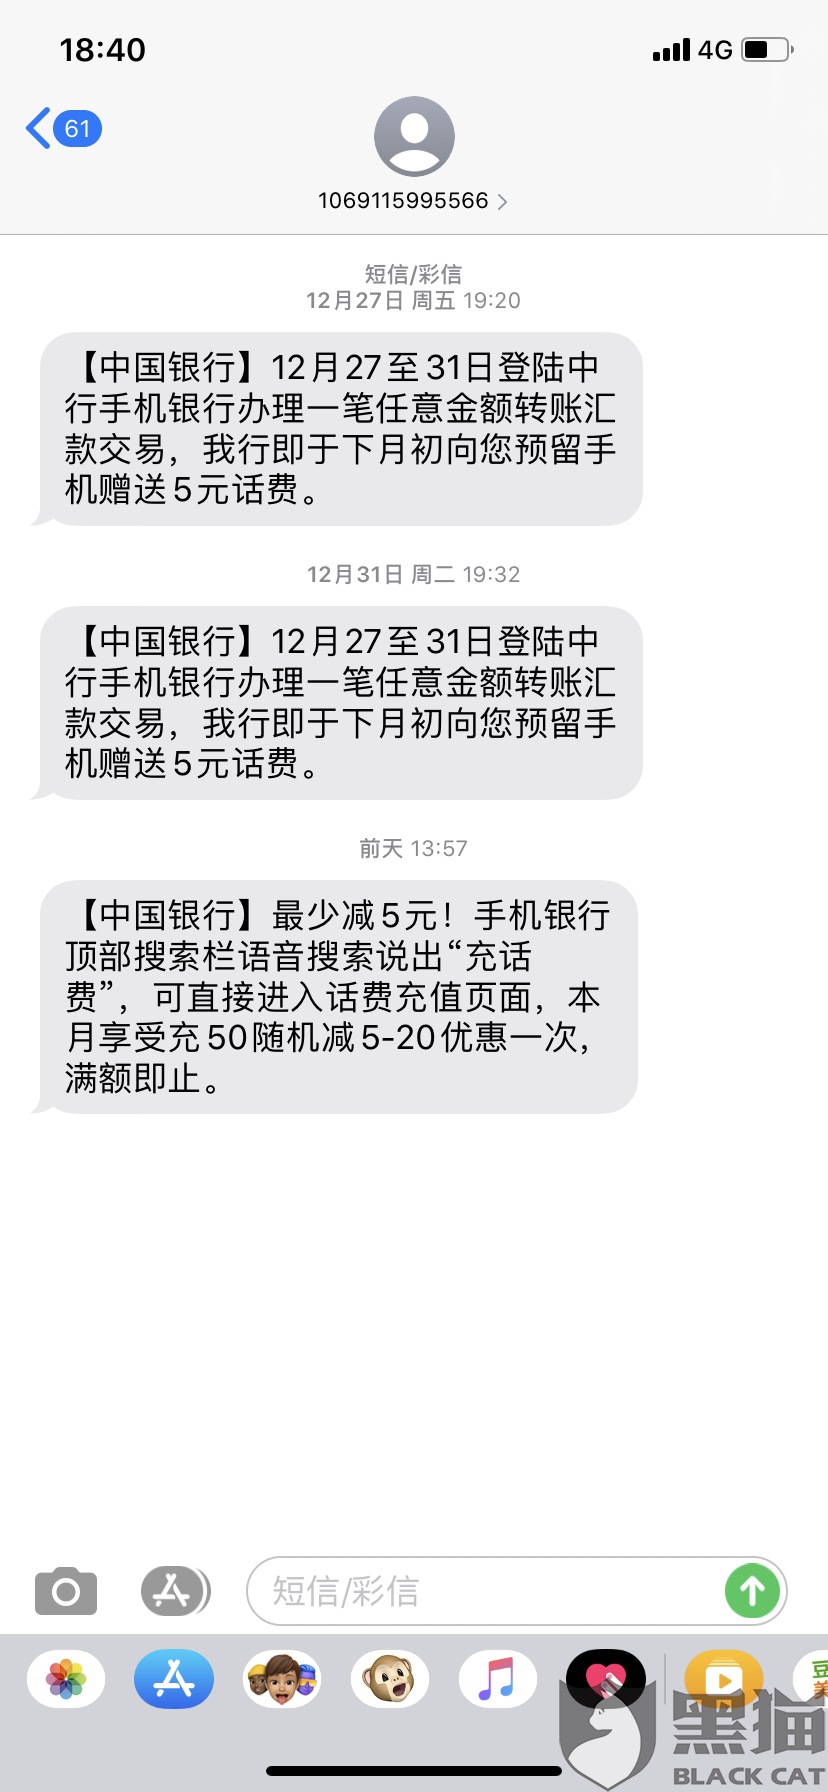 【中国银行】12月27至31日登陆中行手机银行办理一笔任意金额转账汇款